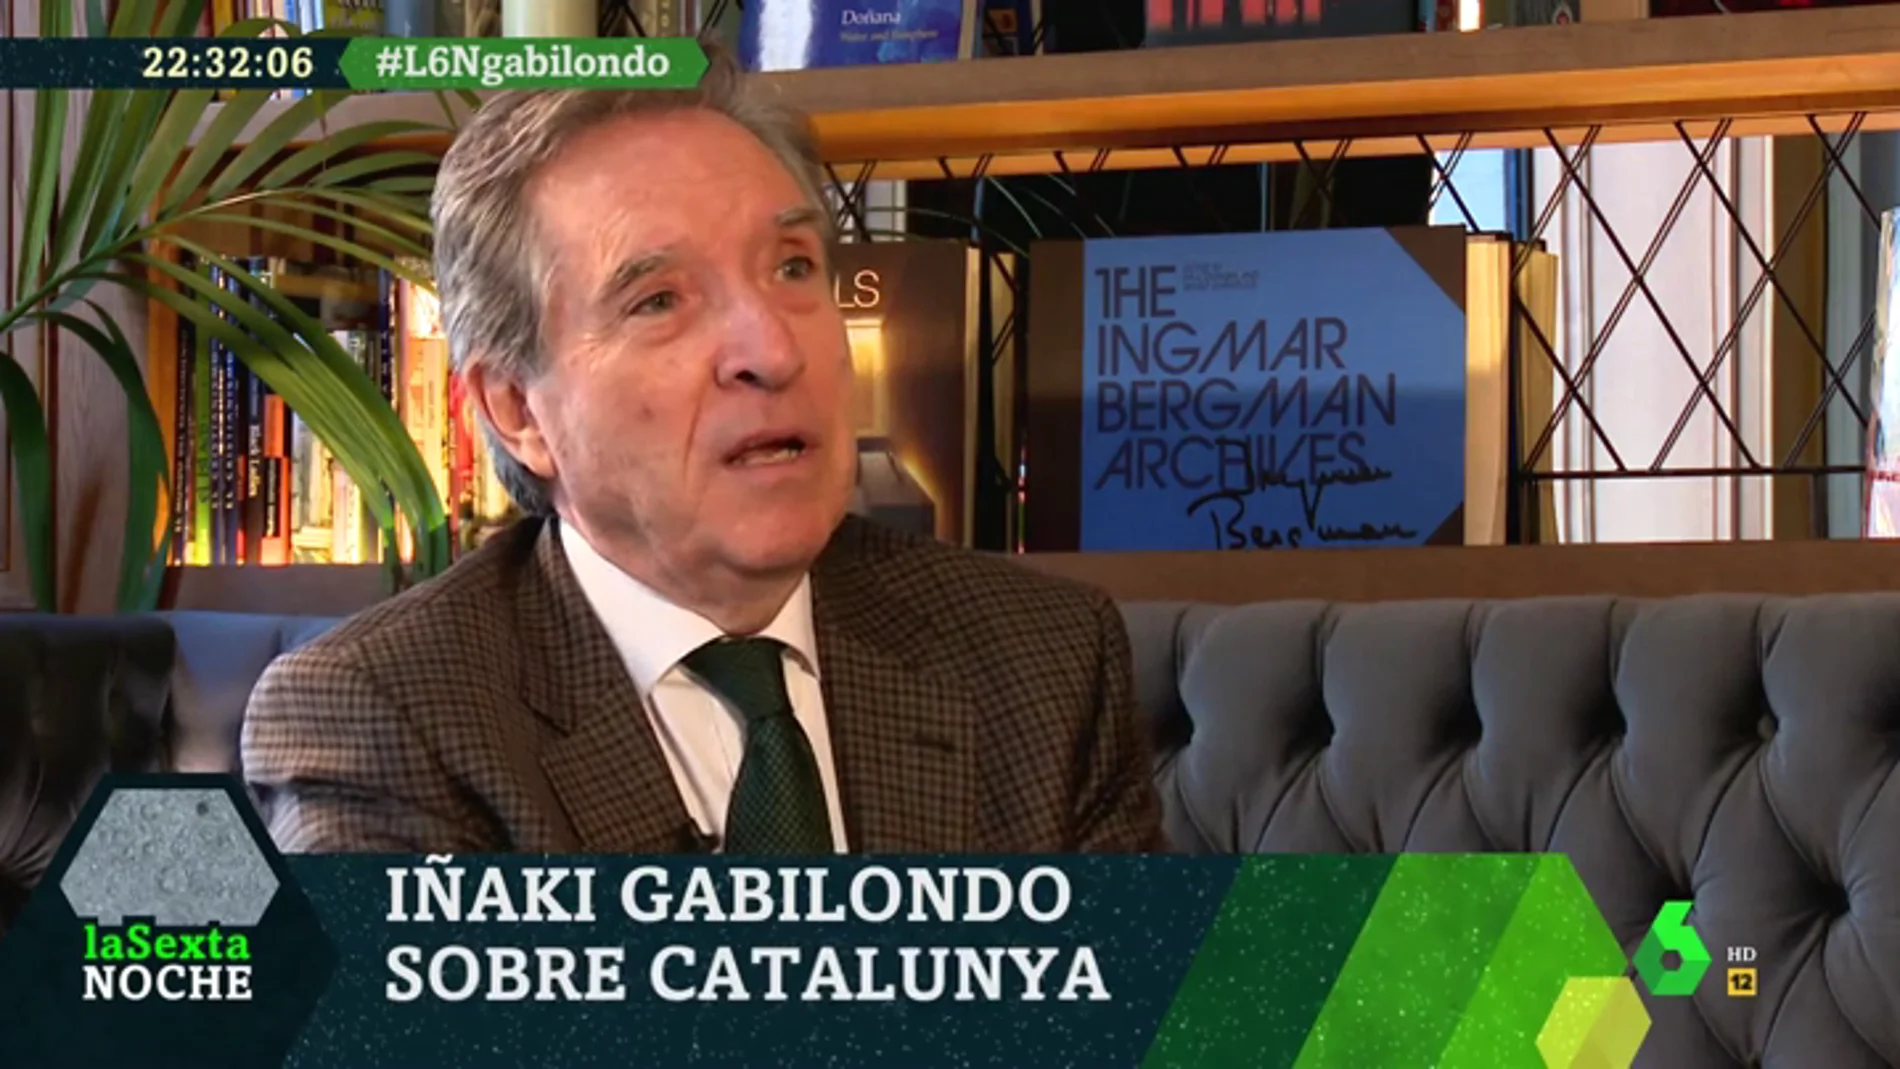 Iñaki Gabilondo: "Me pregunto cuál es la solución de Casado, Torra, Iglesias o Sánchez para Cataluña. Ninguno la tiene" 